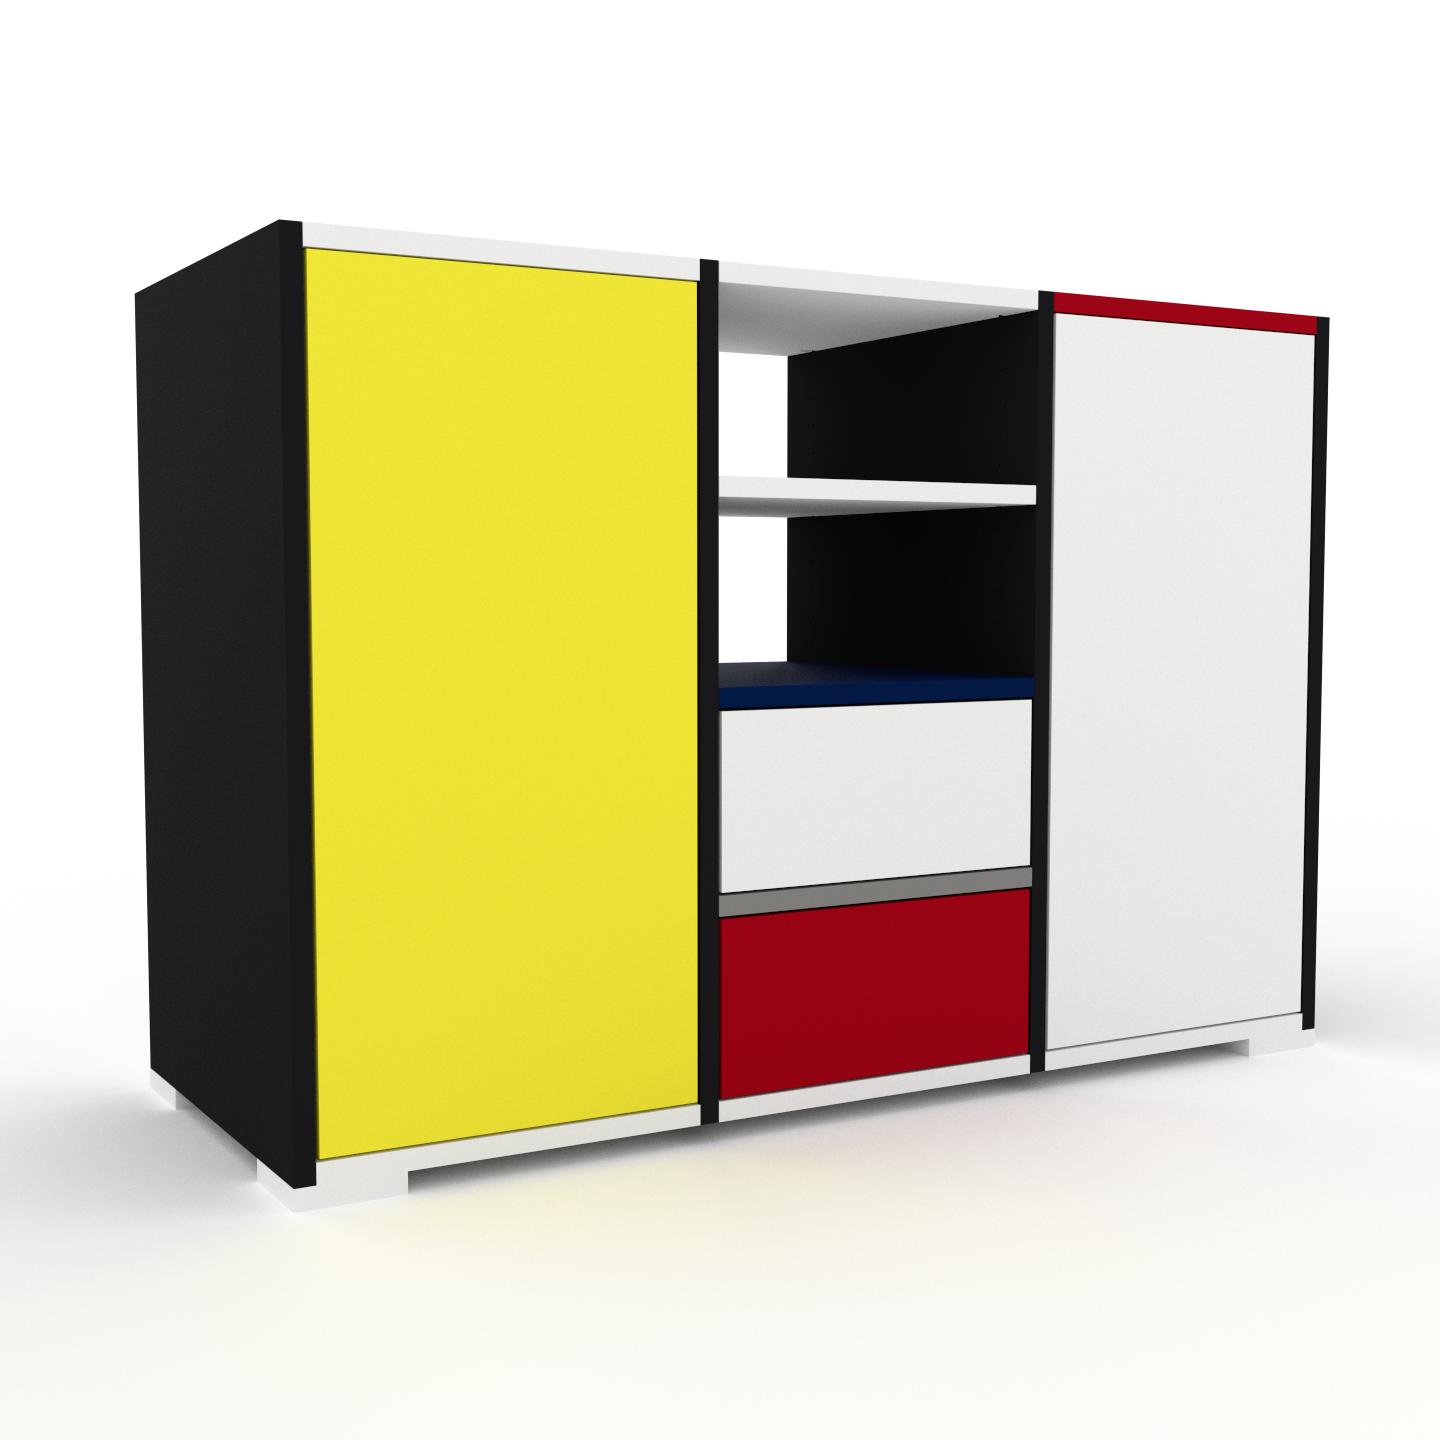 MYCS Bücherregal Weiß - Modernes Regal für Bücher: Schubladen in Rot & Türen in Zitronengelb - 118 x 81 x 47 cm, konfigurierbar